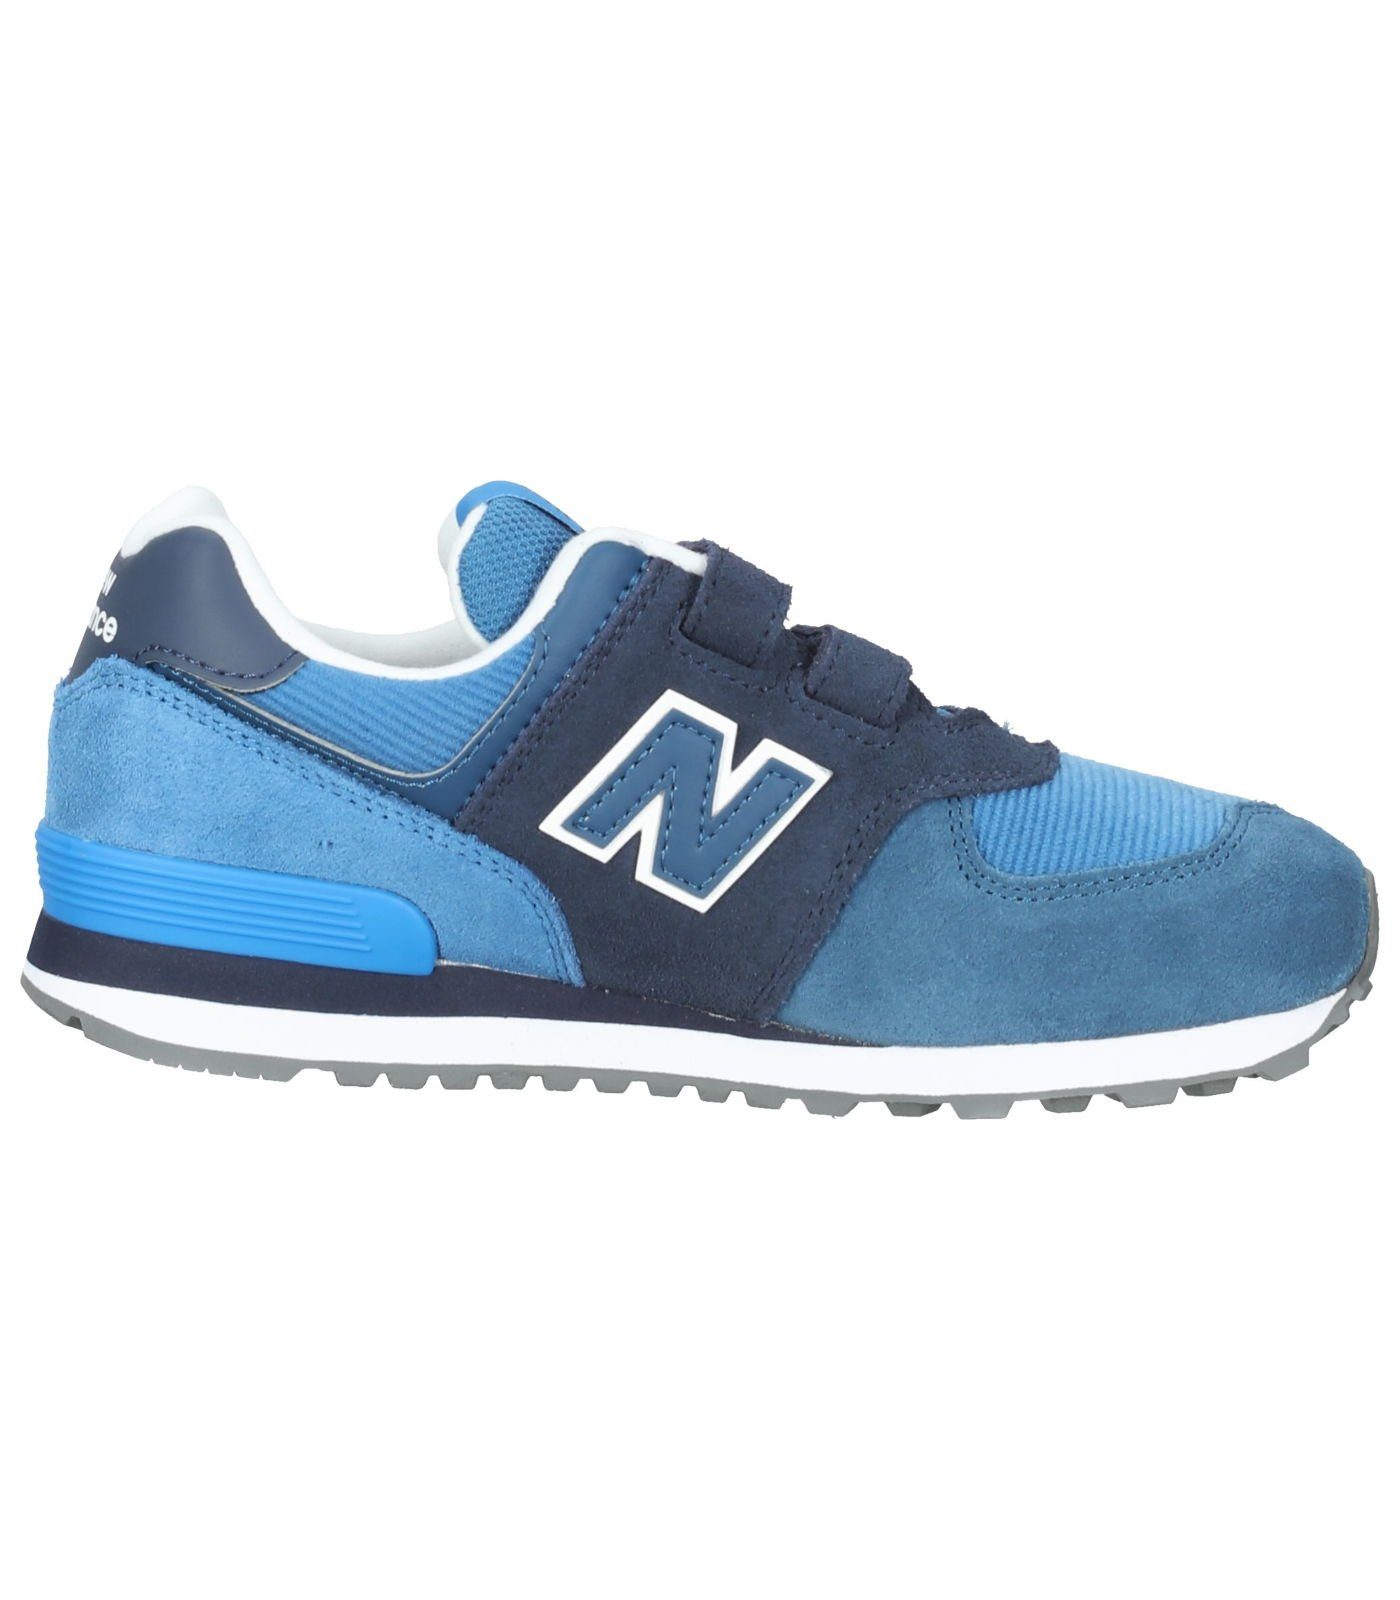 New Balance Veloursleder/Textil Sneaker Blau Sneaker